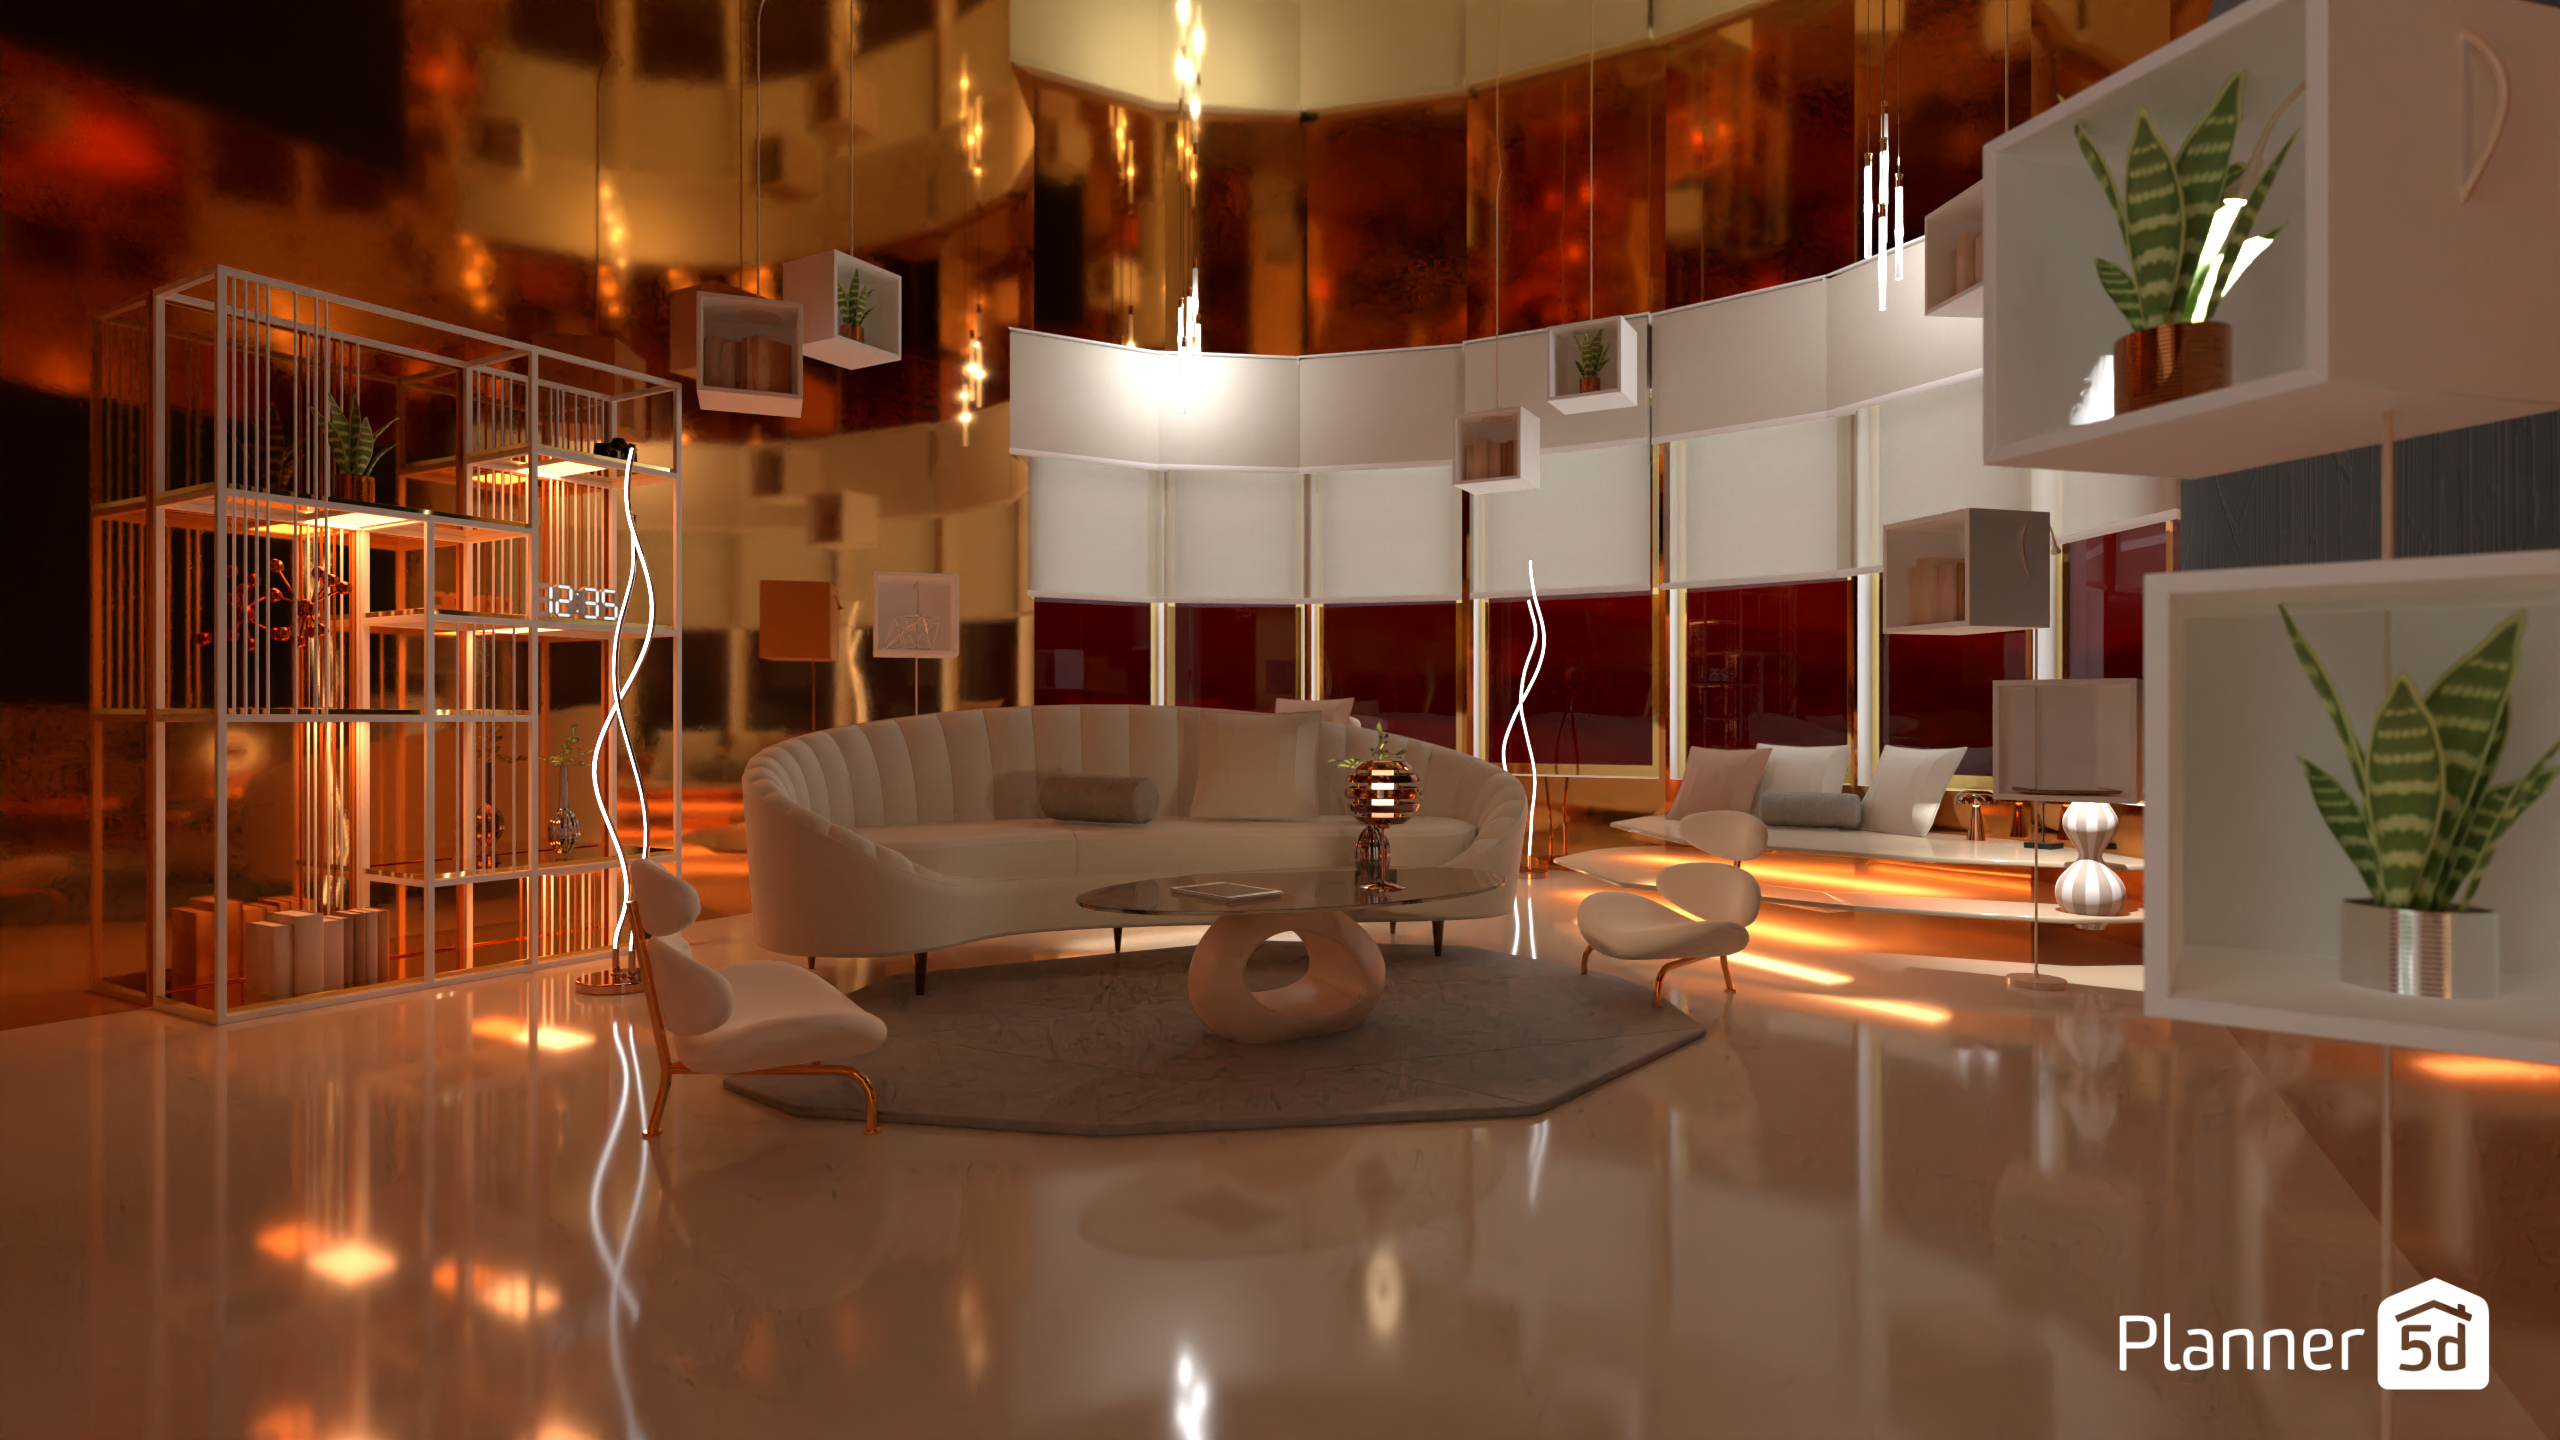 Sala de estar futurista / Batalla de diseño 17124987 by Hall Pat image